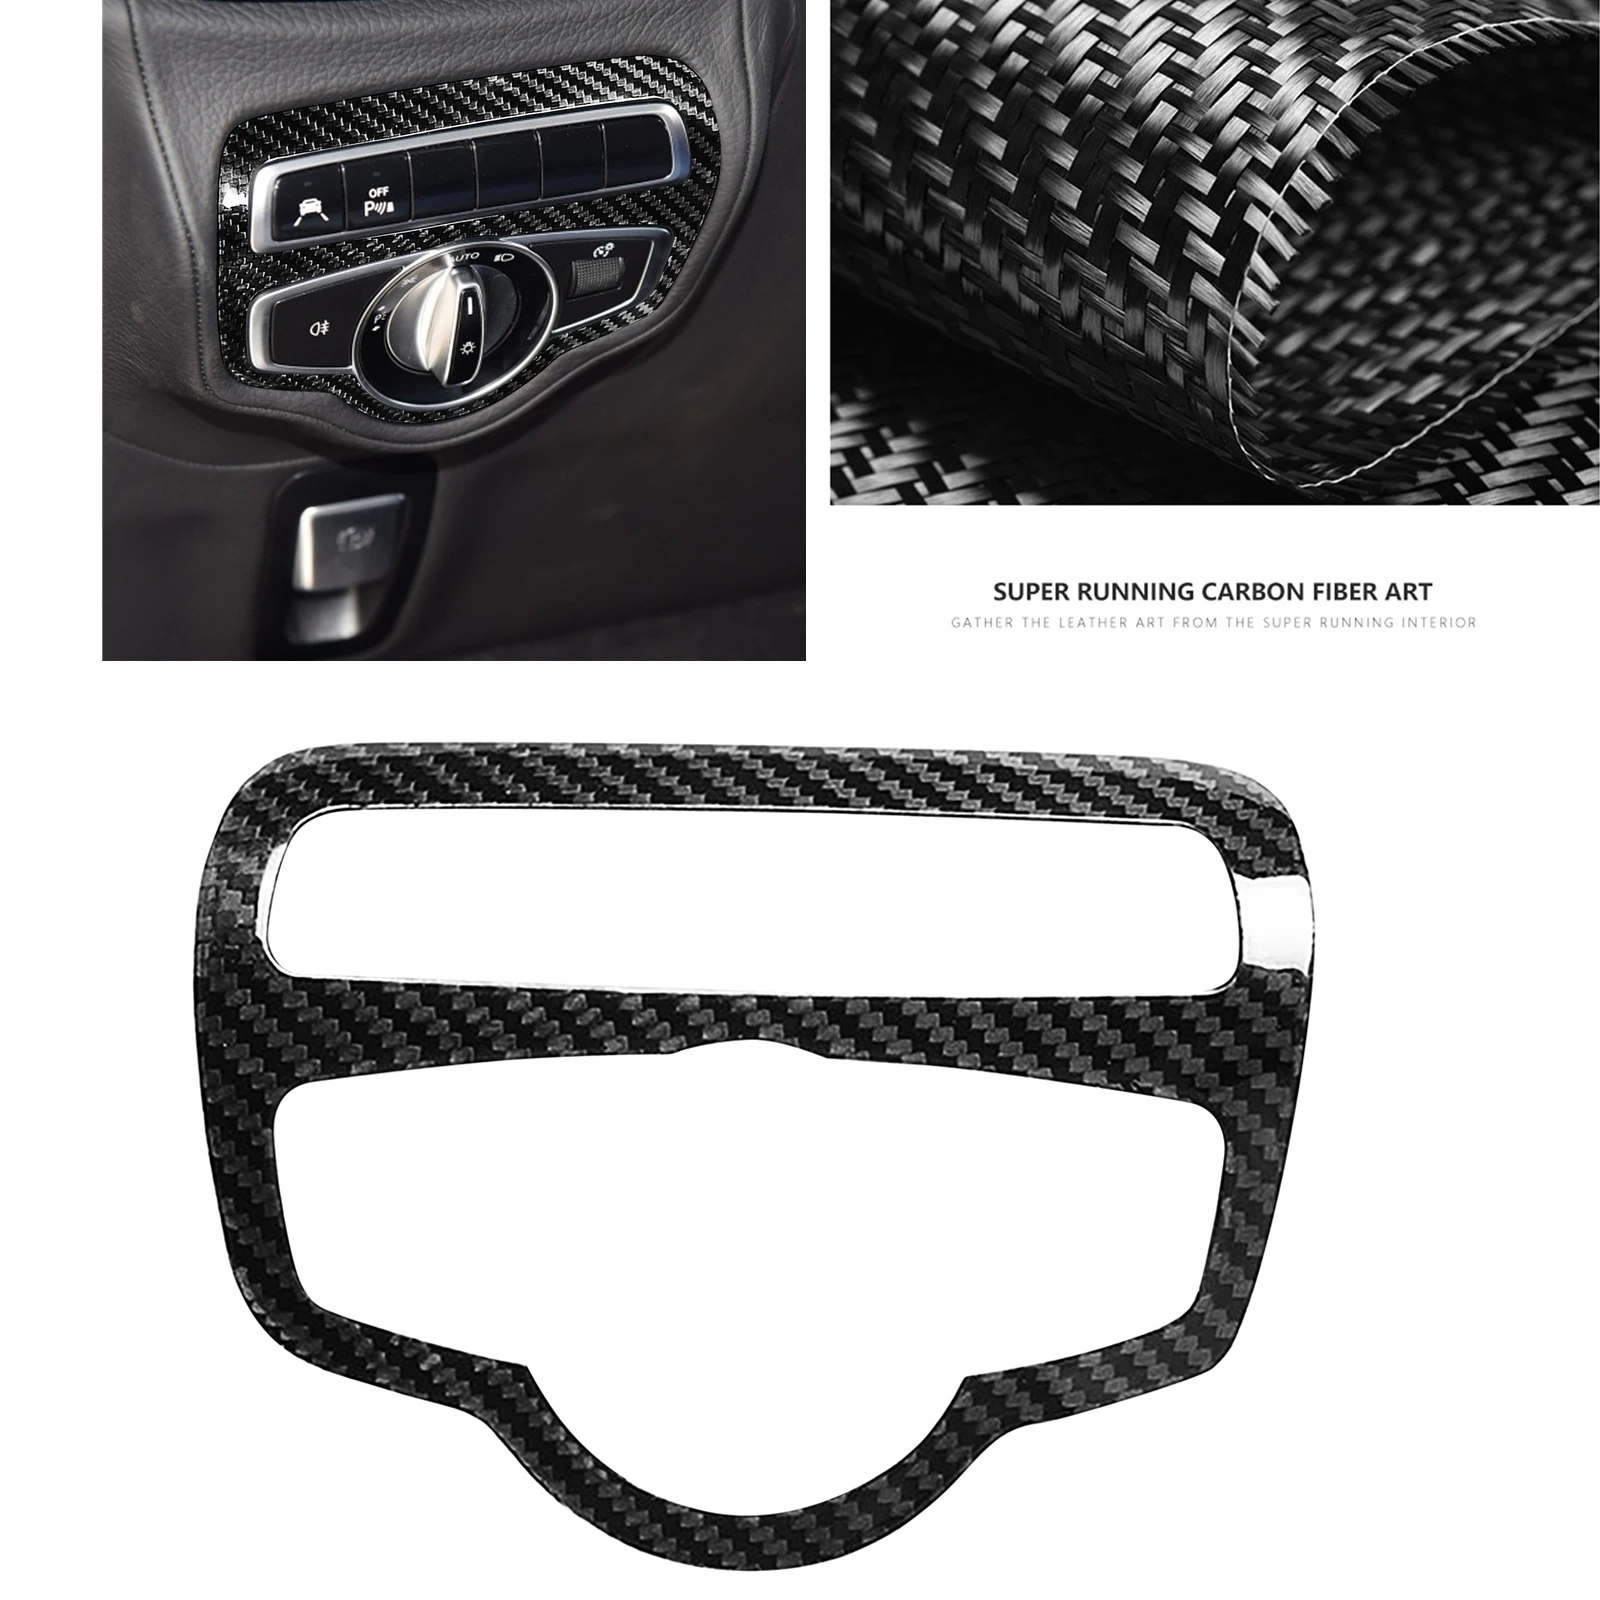 

Передняя головка из углеродного волокна для Mercedes Benz W464 G63 G500 2019-2020, ручка лампы, ключ для фары, крышка переключателя фары, рамка, отделка